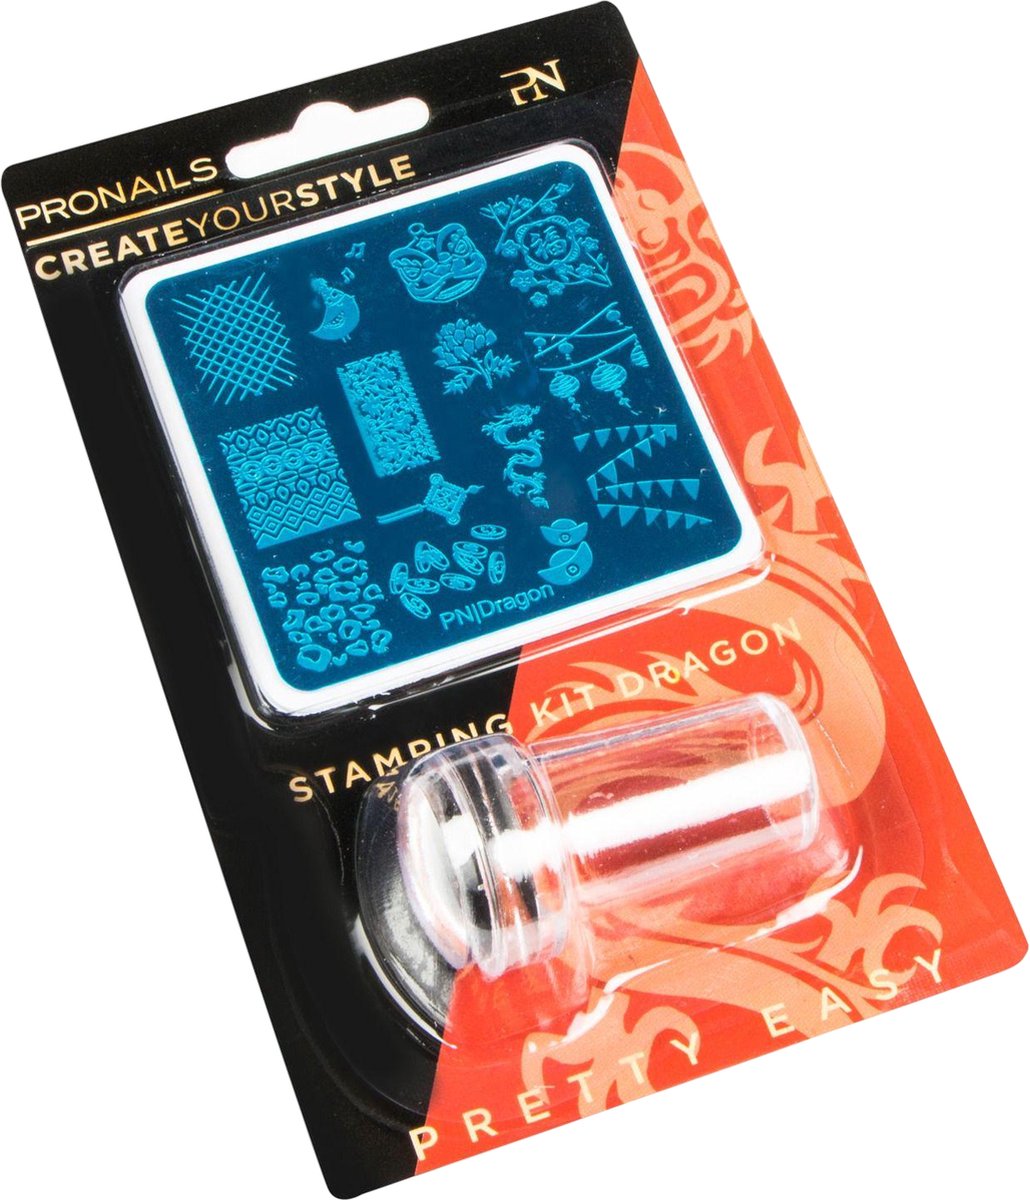 PN Self Care PN Selfcare Nagelstempel Set van 16 stuks Stamping Kit Nagelstickers Nail Art Oranje